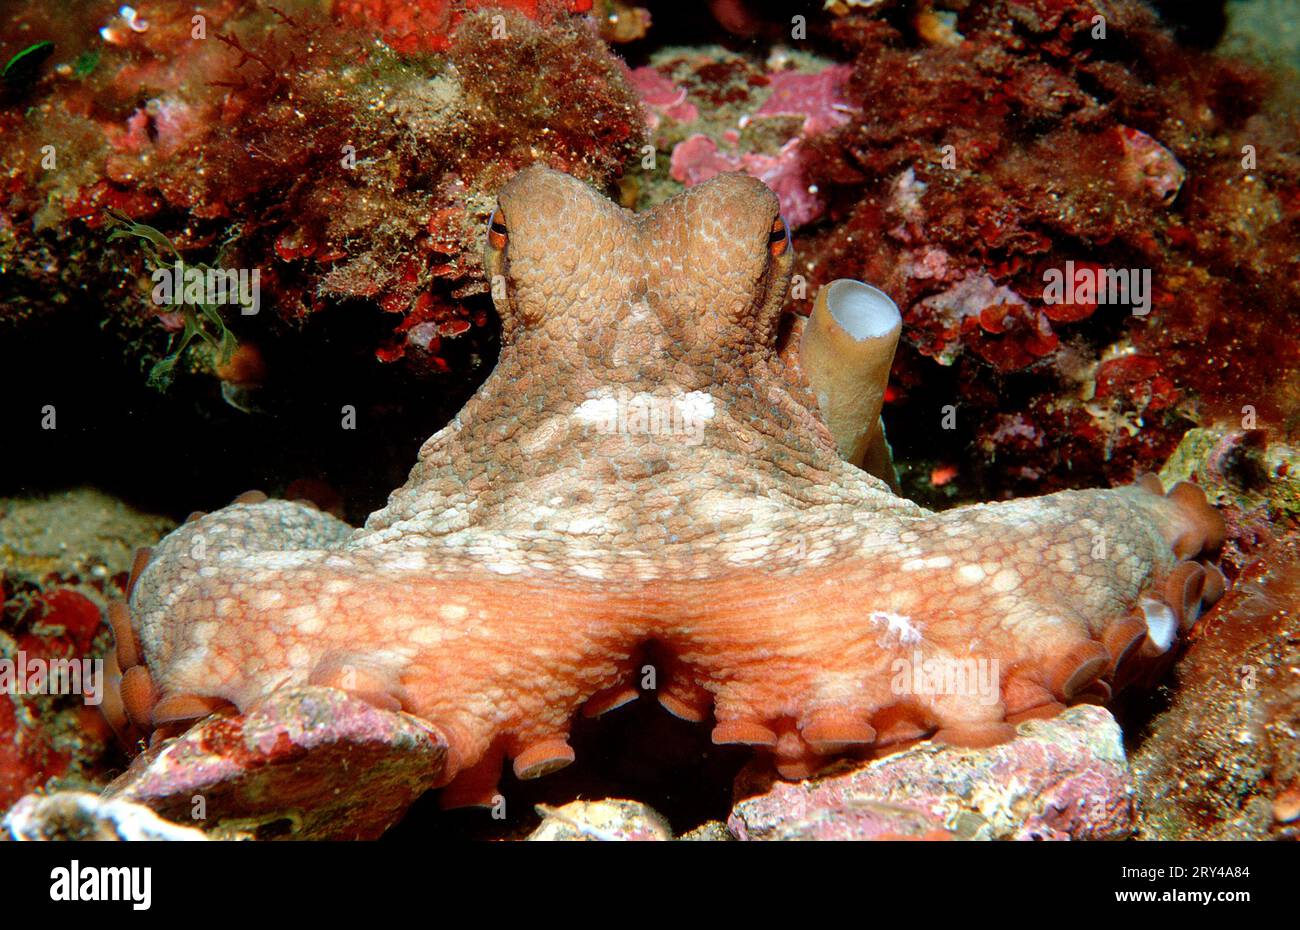 Poulpe commune d'Europe, Costa Brava, Espagne (Octopus vulgaris), poulpe commune de l'Atlantique Banque D'Images